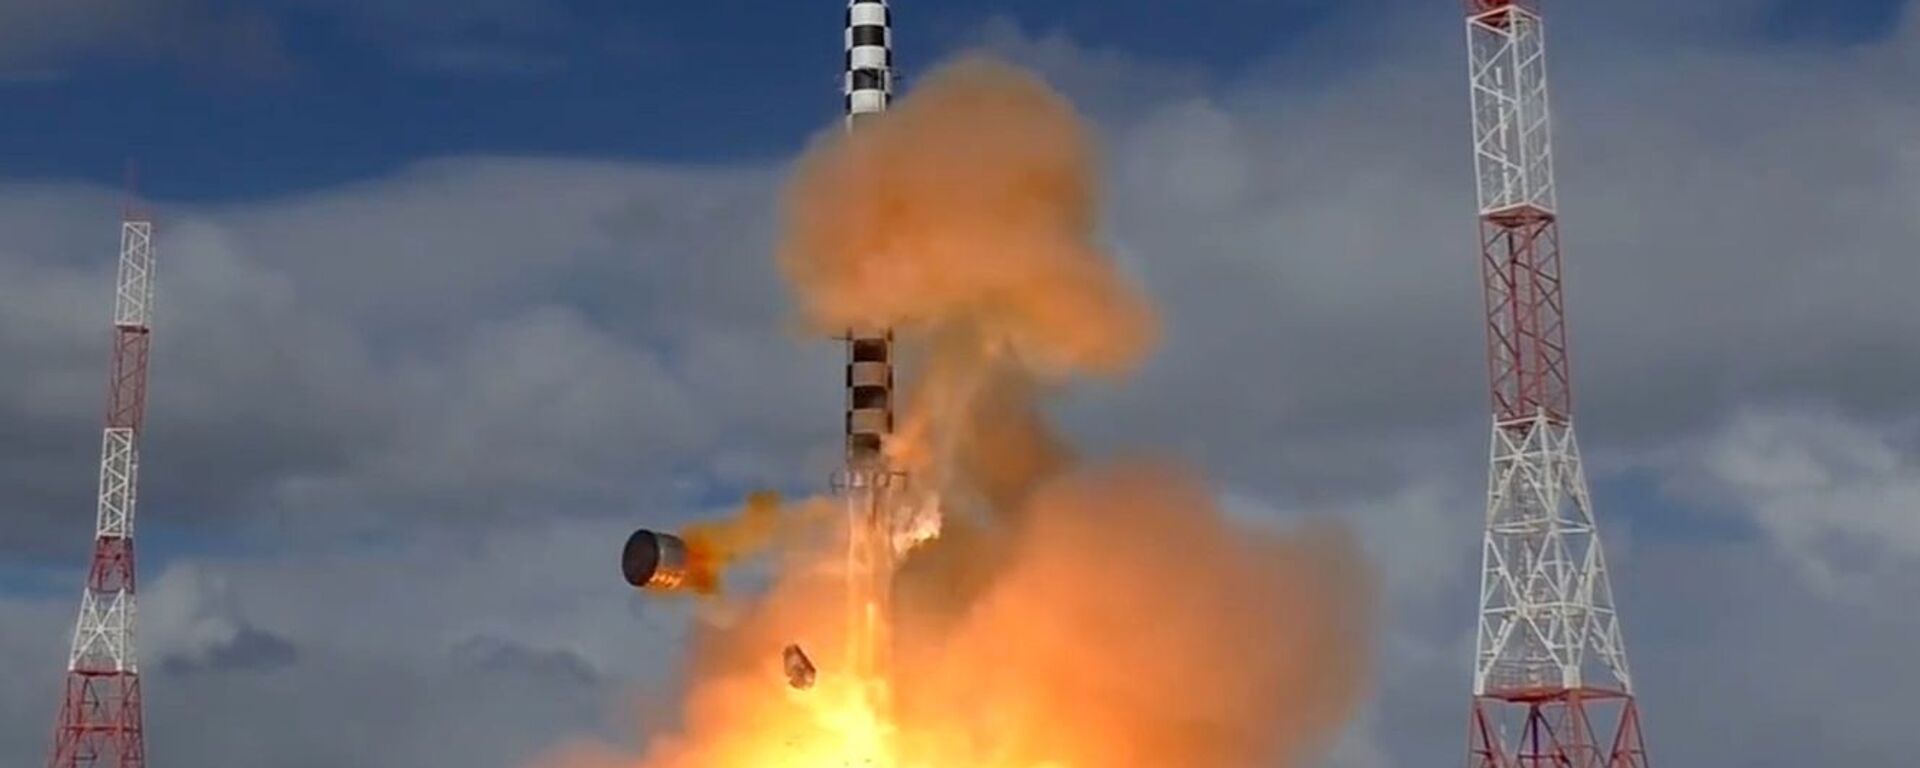 Запуск ракеты «Сармат» с космодрома «Плесецк» - Sputnik Латвия, 1920, 31.03.2021